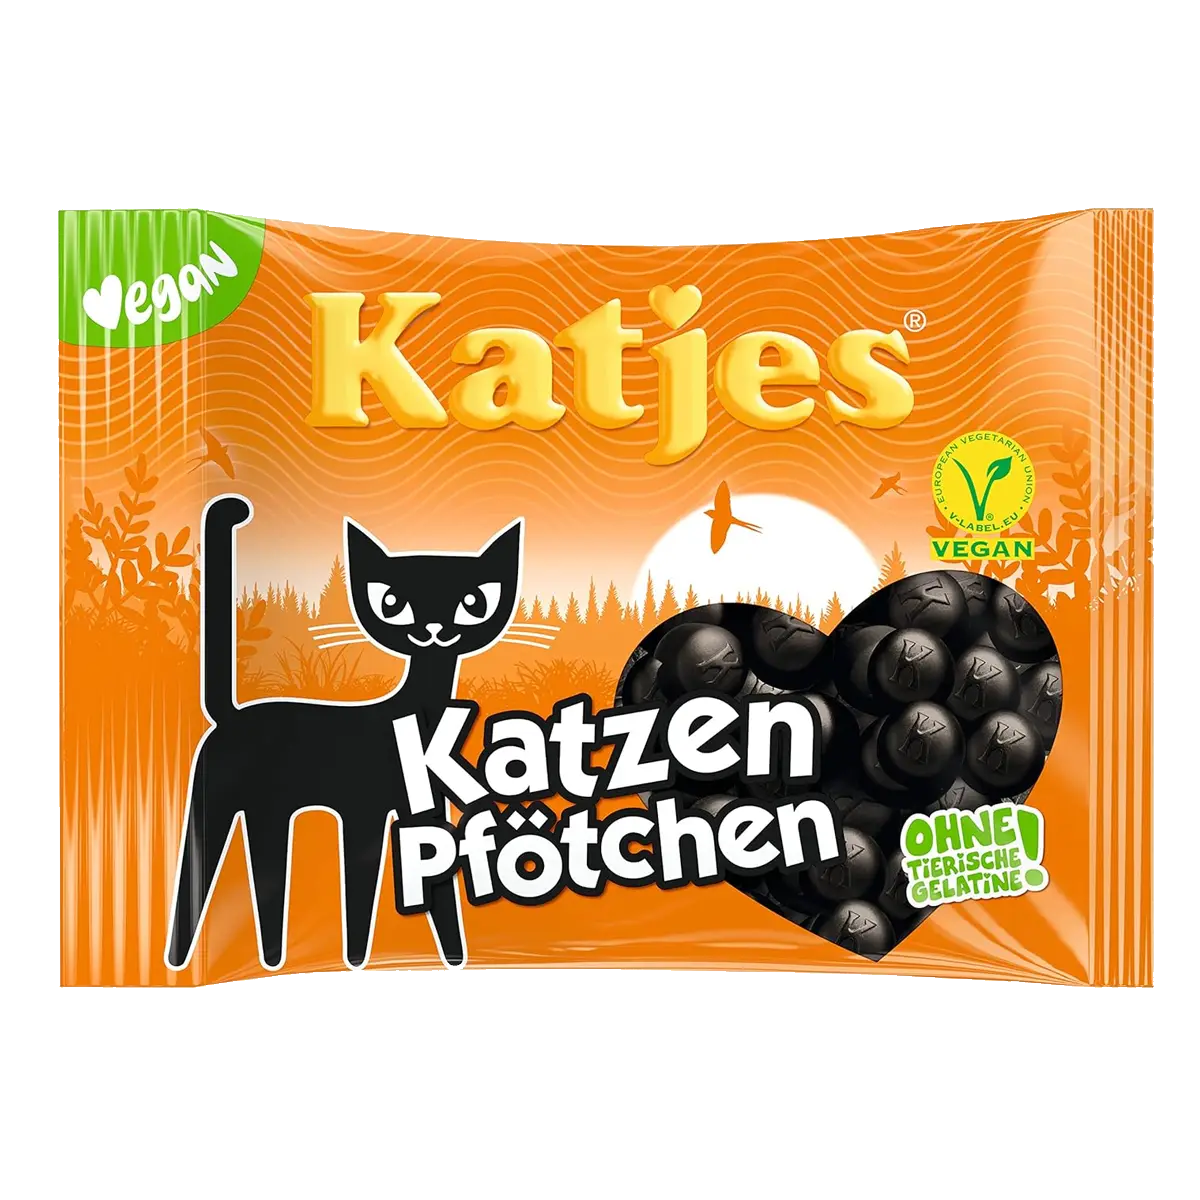 Katjes Cat Paws, 200 g